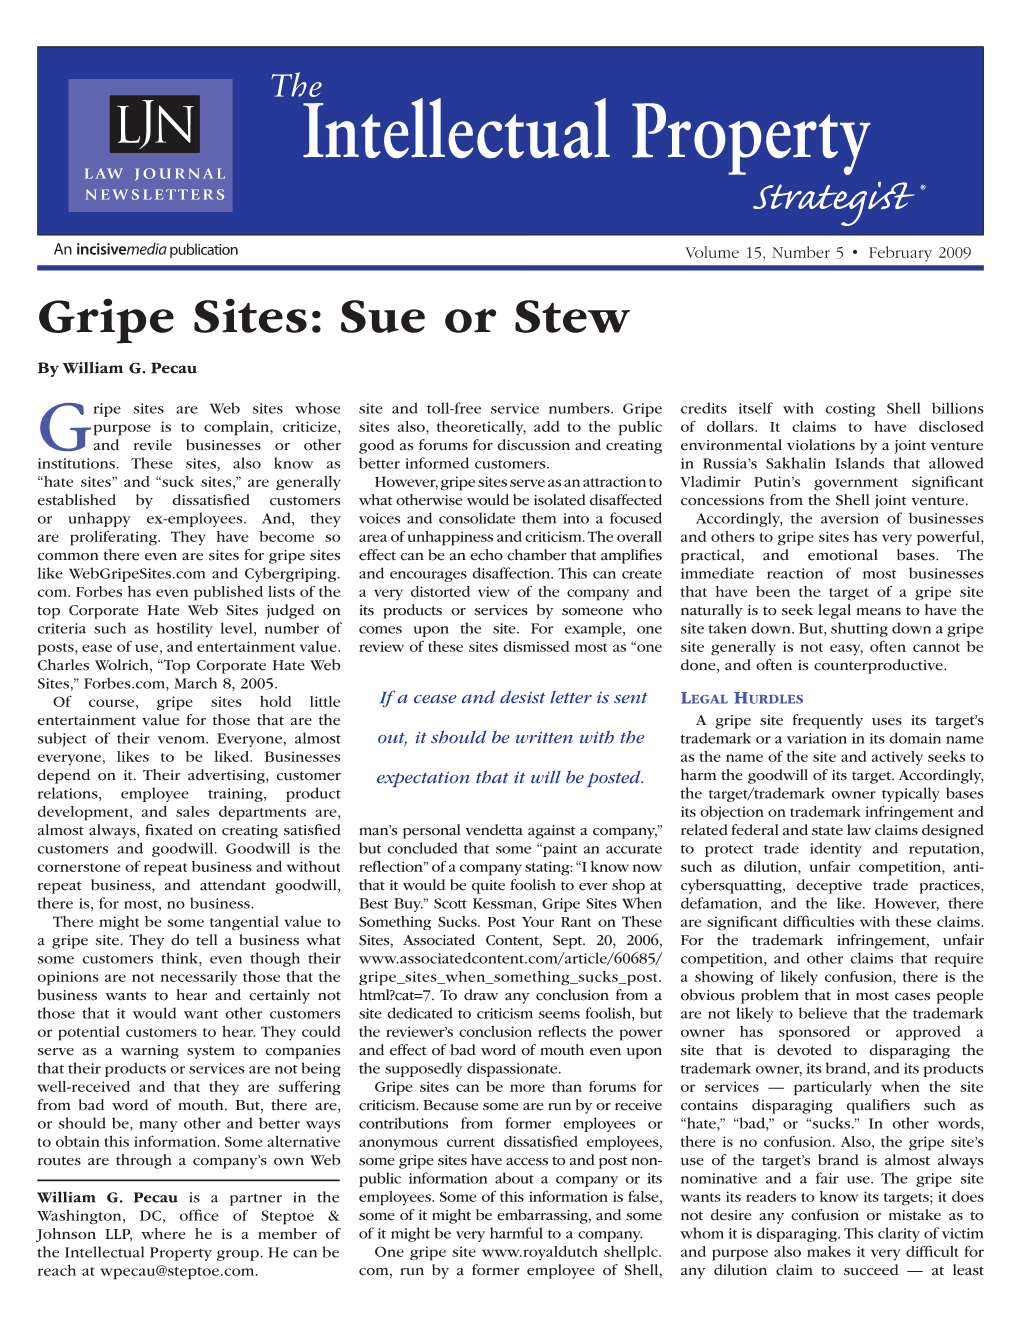 Gripe Sites: Sue Or Stew by William G